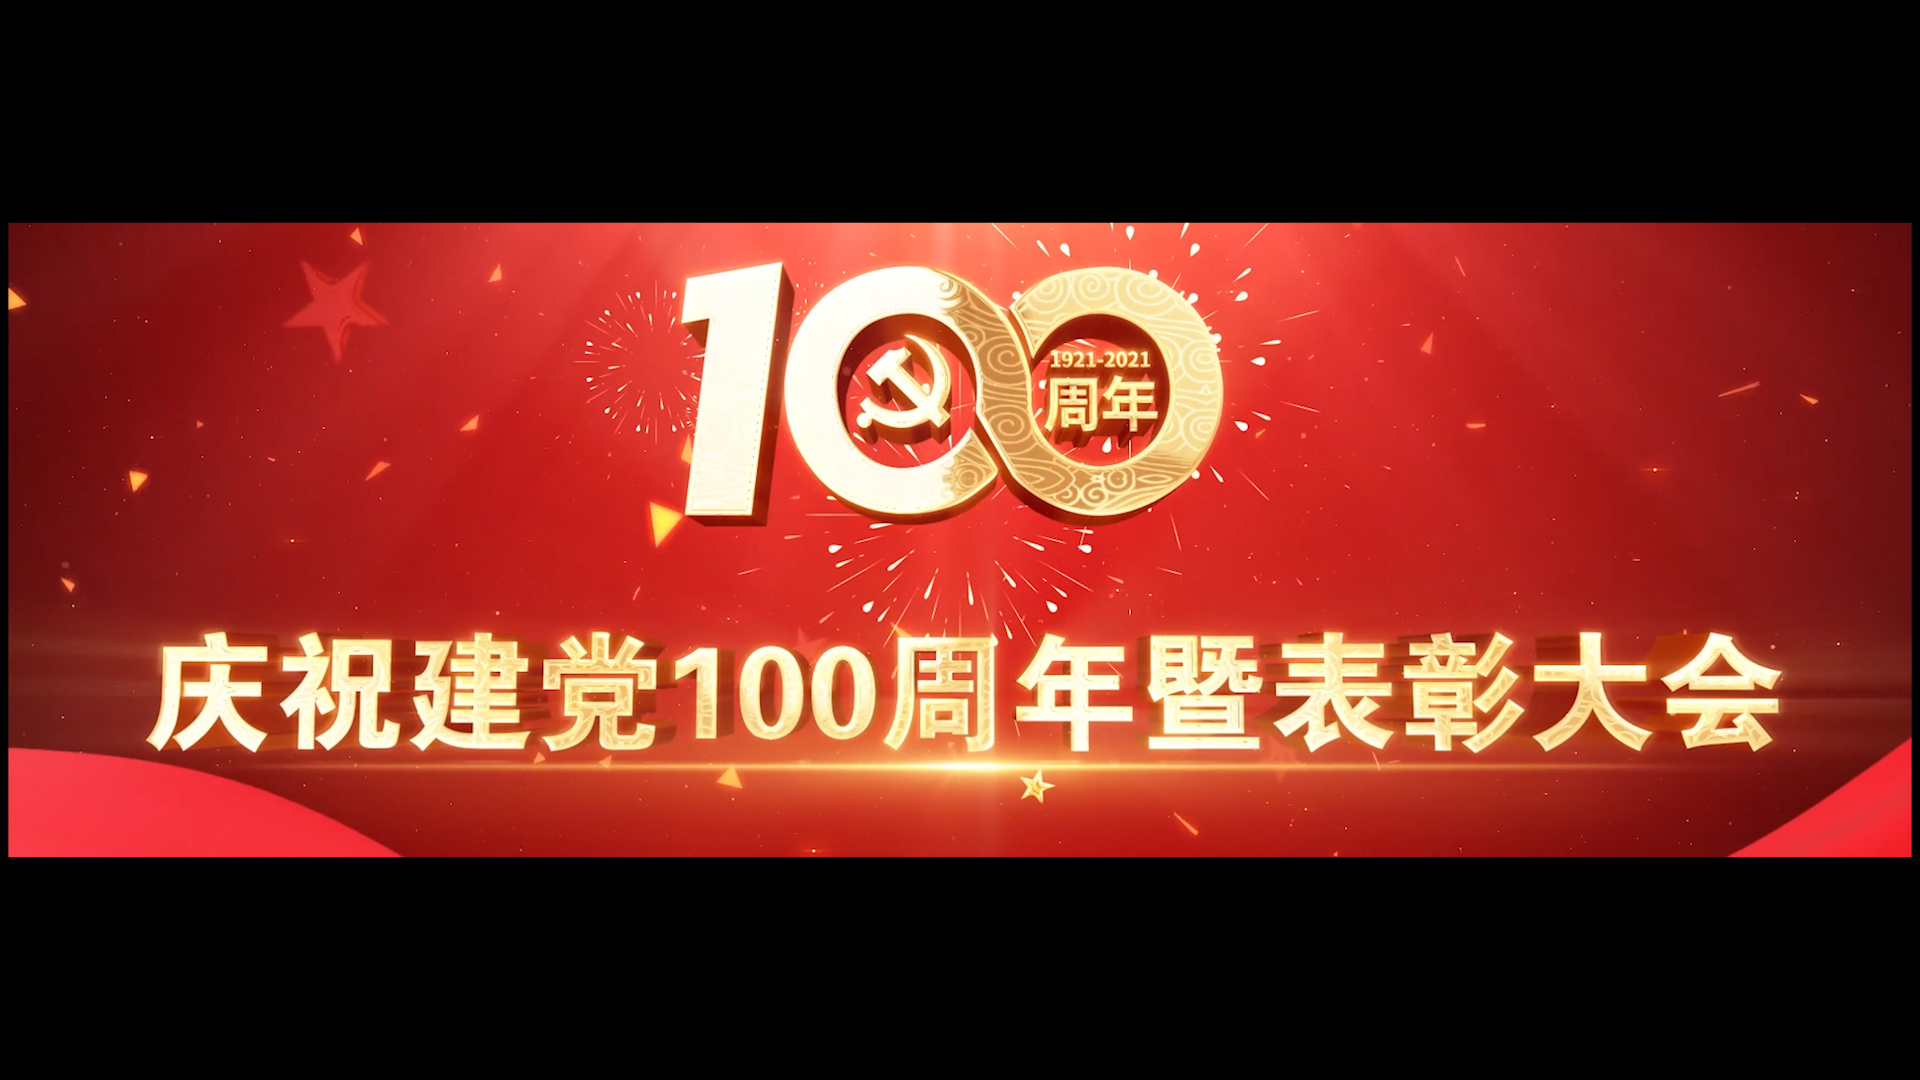 中原农业保险公司庆祝建党100周年暨表彰大会背景视频交片